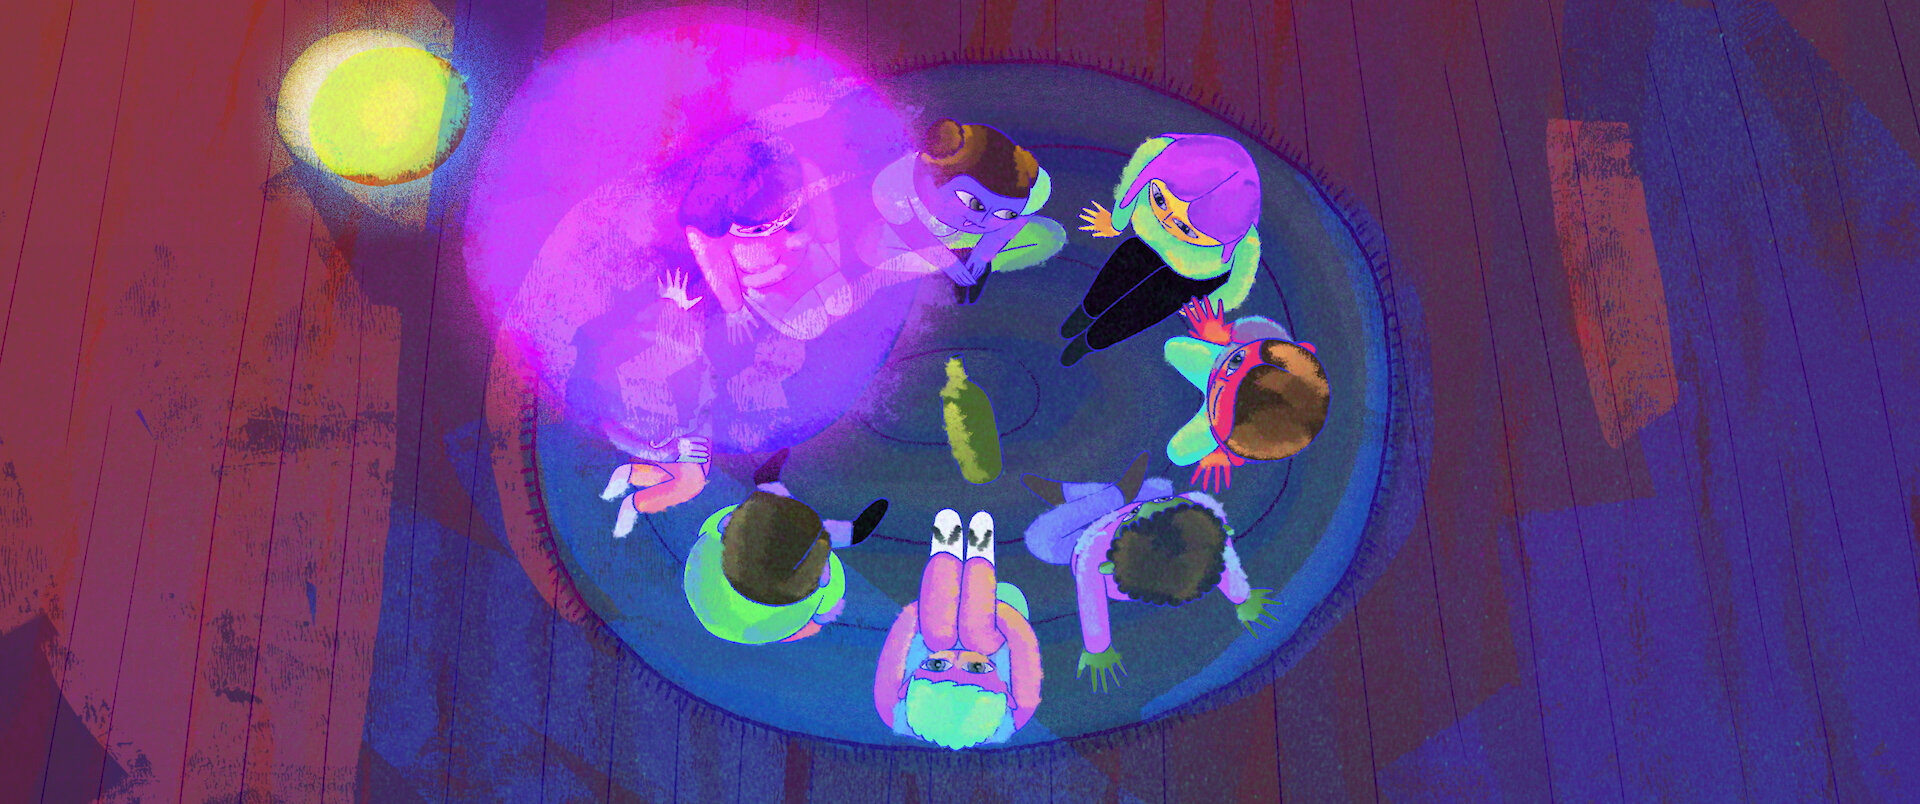 Cena da animação Friend of a Friend. Vemos, de cima, um grupo de adolescentes sentados em roda com uma garrafa no centro. As cores predominantes na=o desenho são o roxo, o azul e o verde-água em estilo neon. 